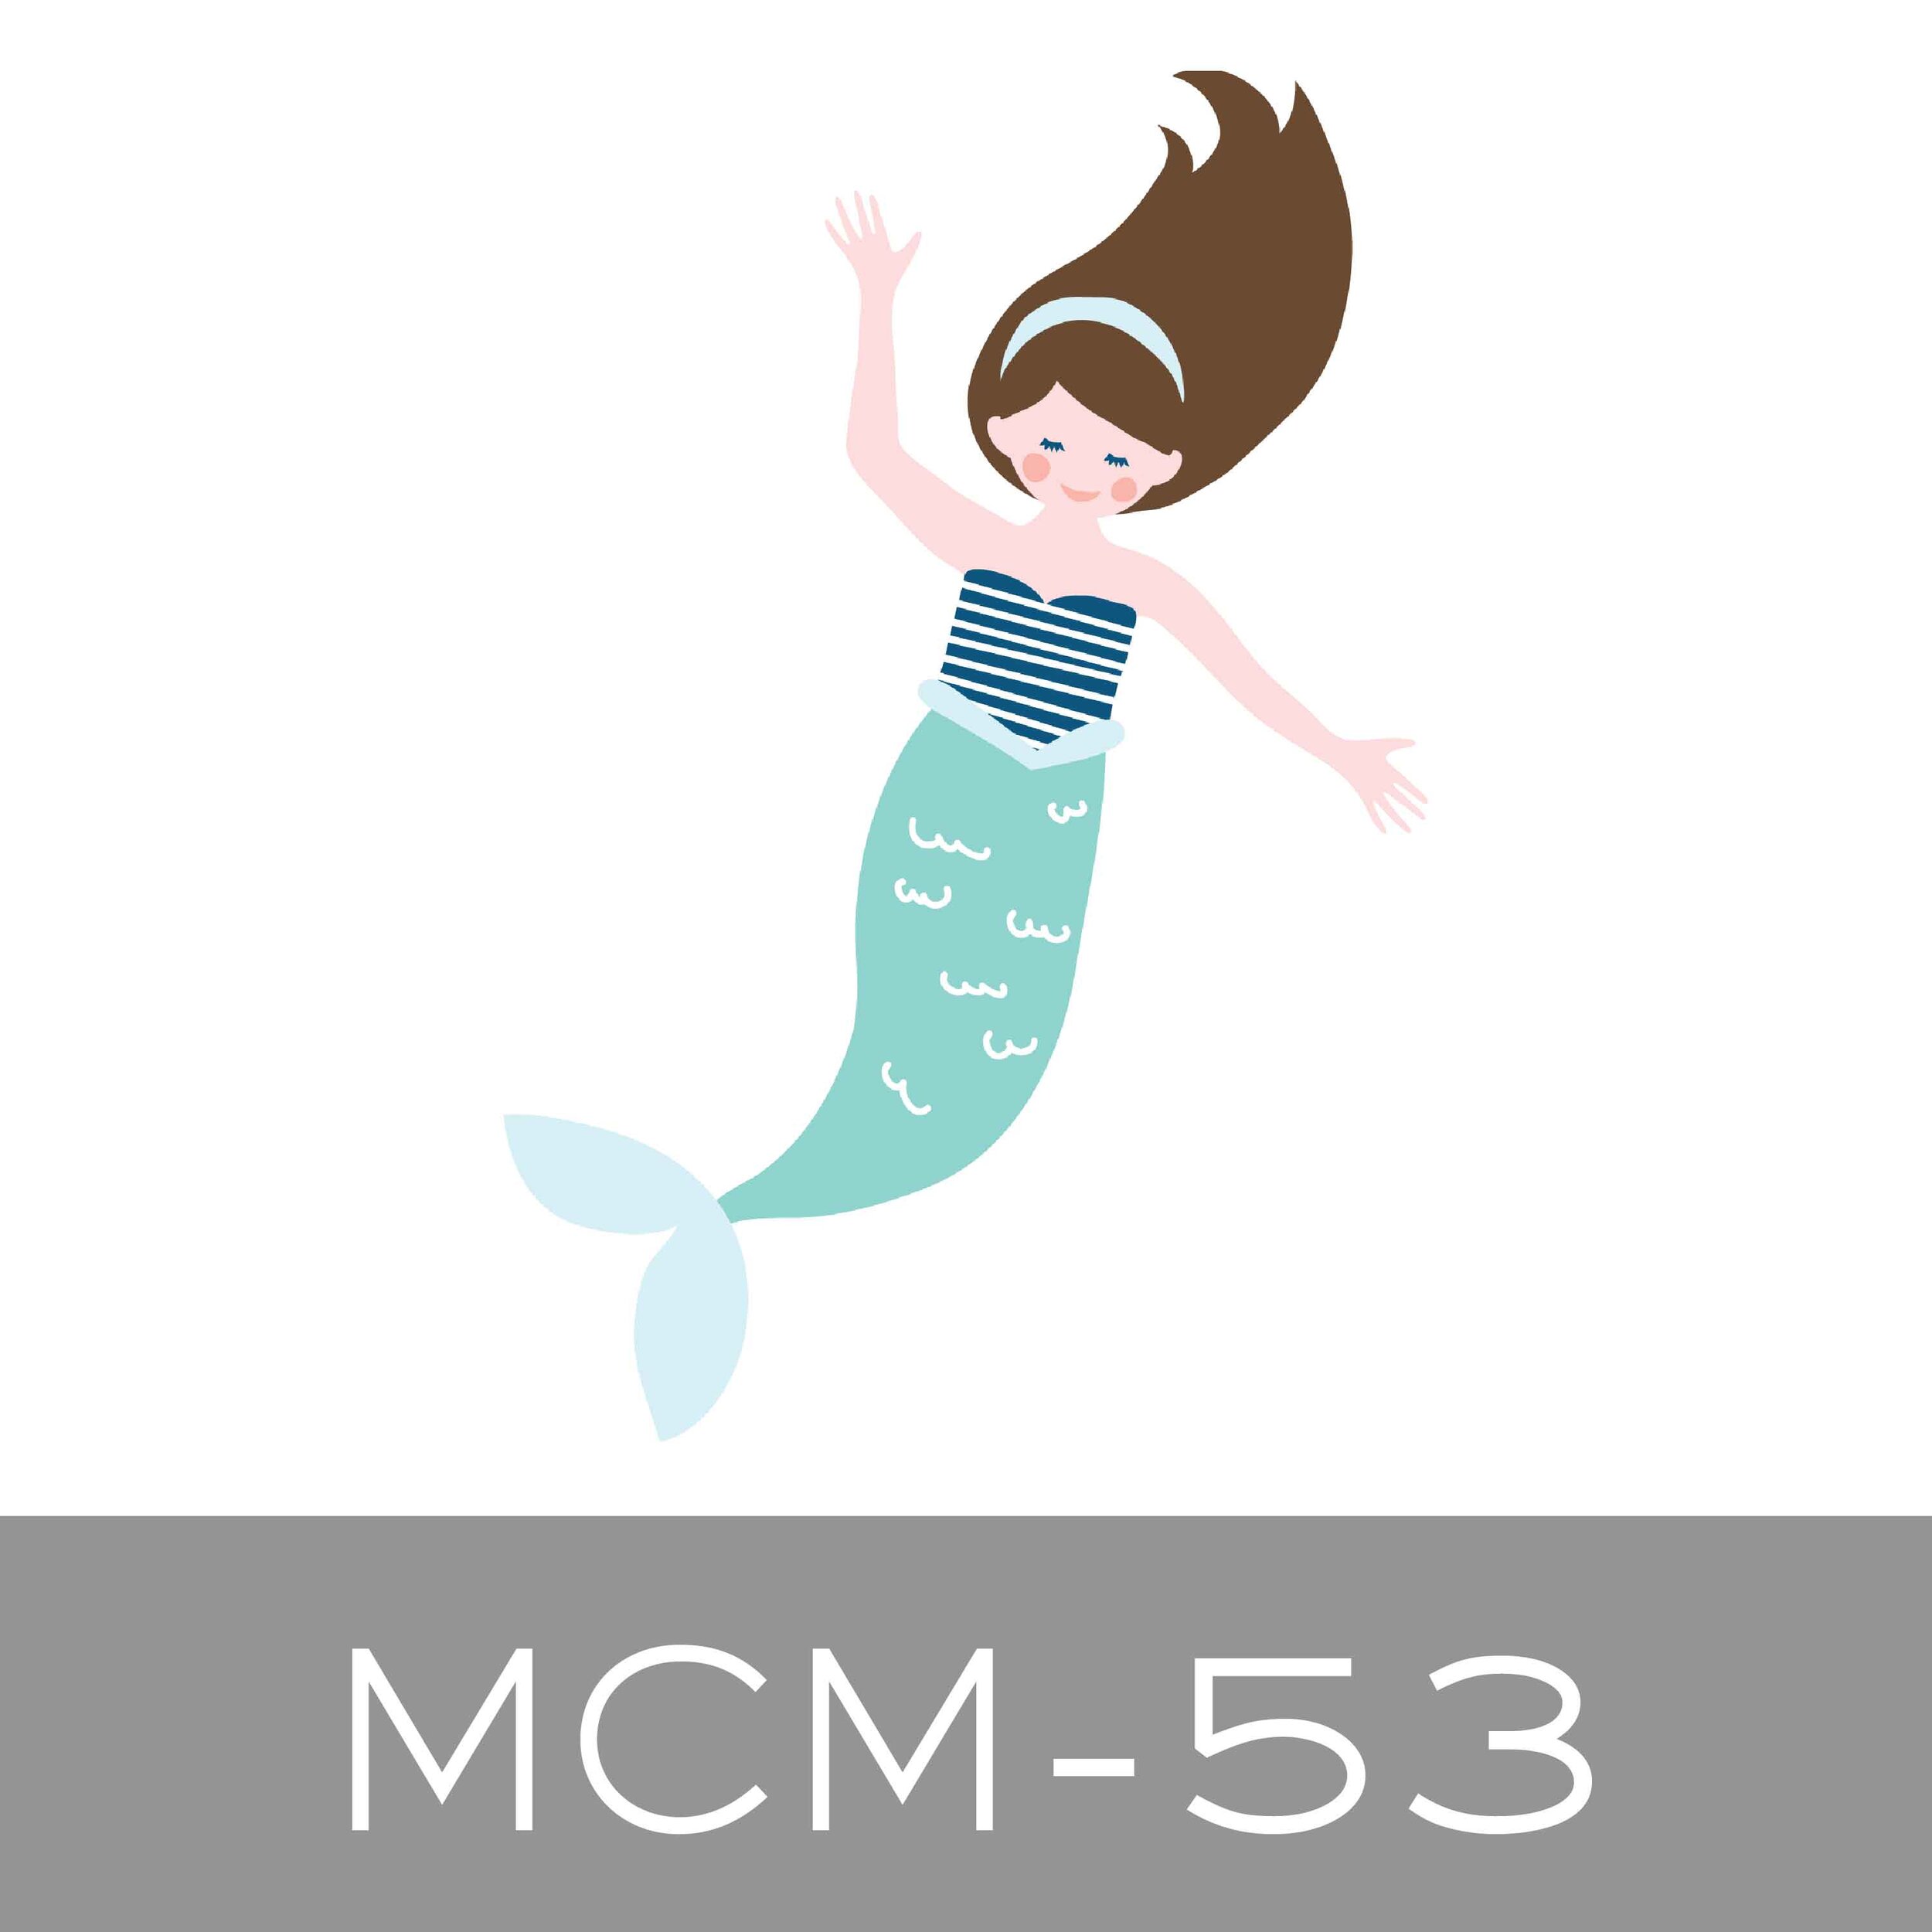 MCM-53.jpg